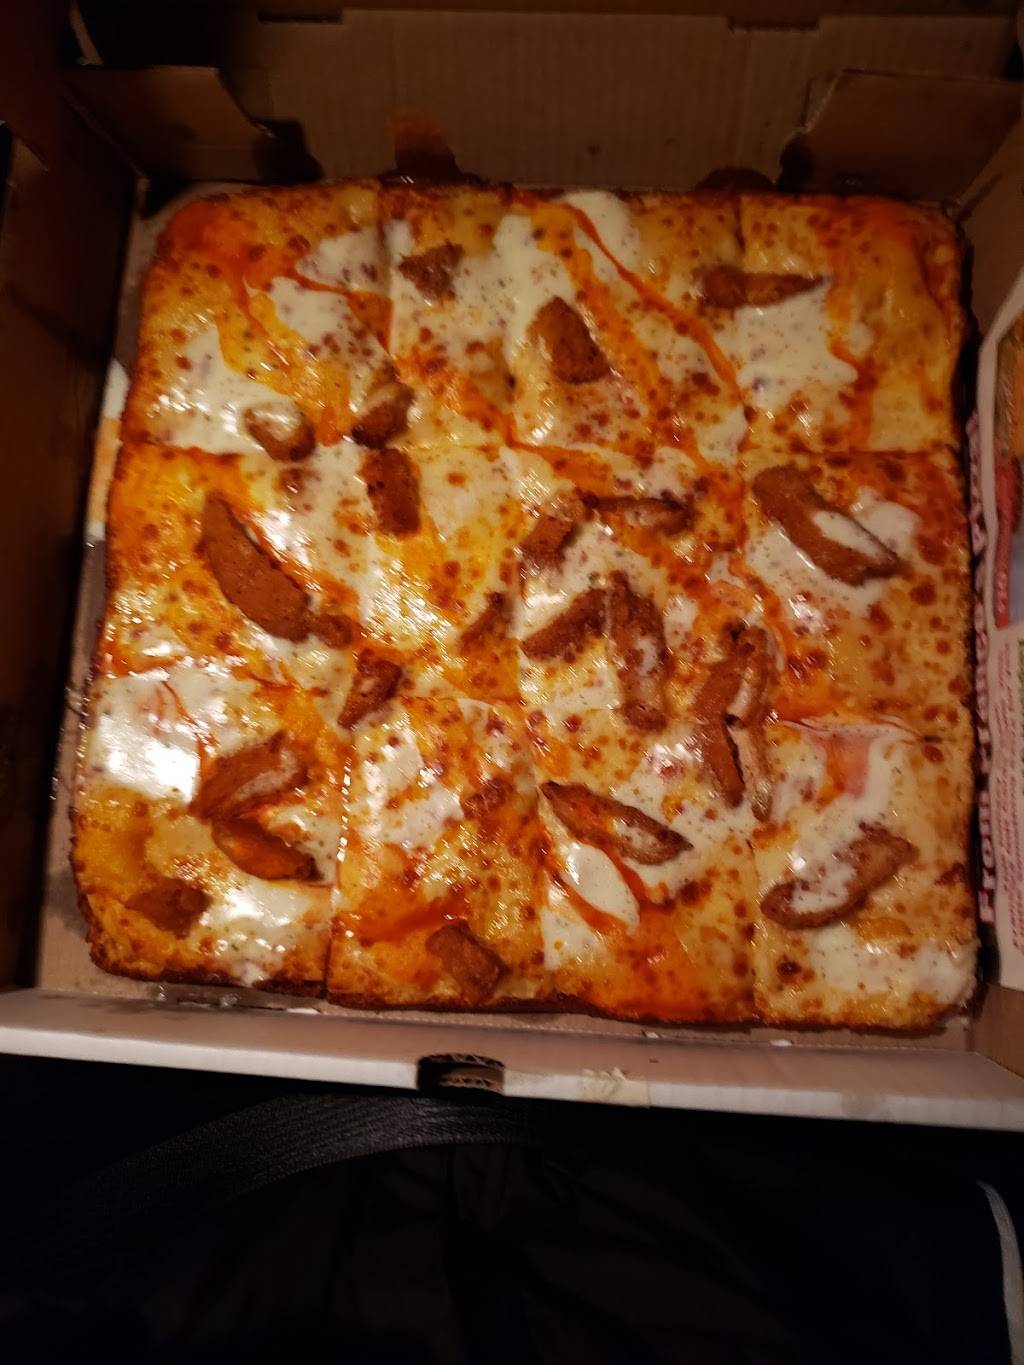 Francos Pizza | meal delivery | 1924 Eggert Rd, Buffalo, NY 14226, USA | 7168357100 OR +1 716-835-7100